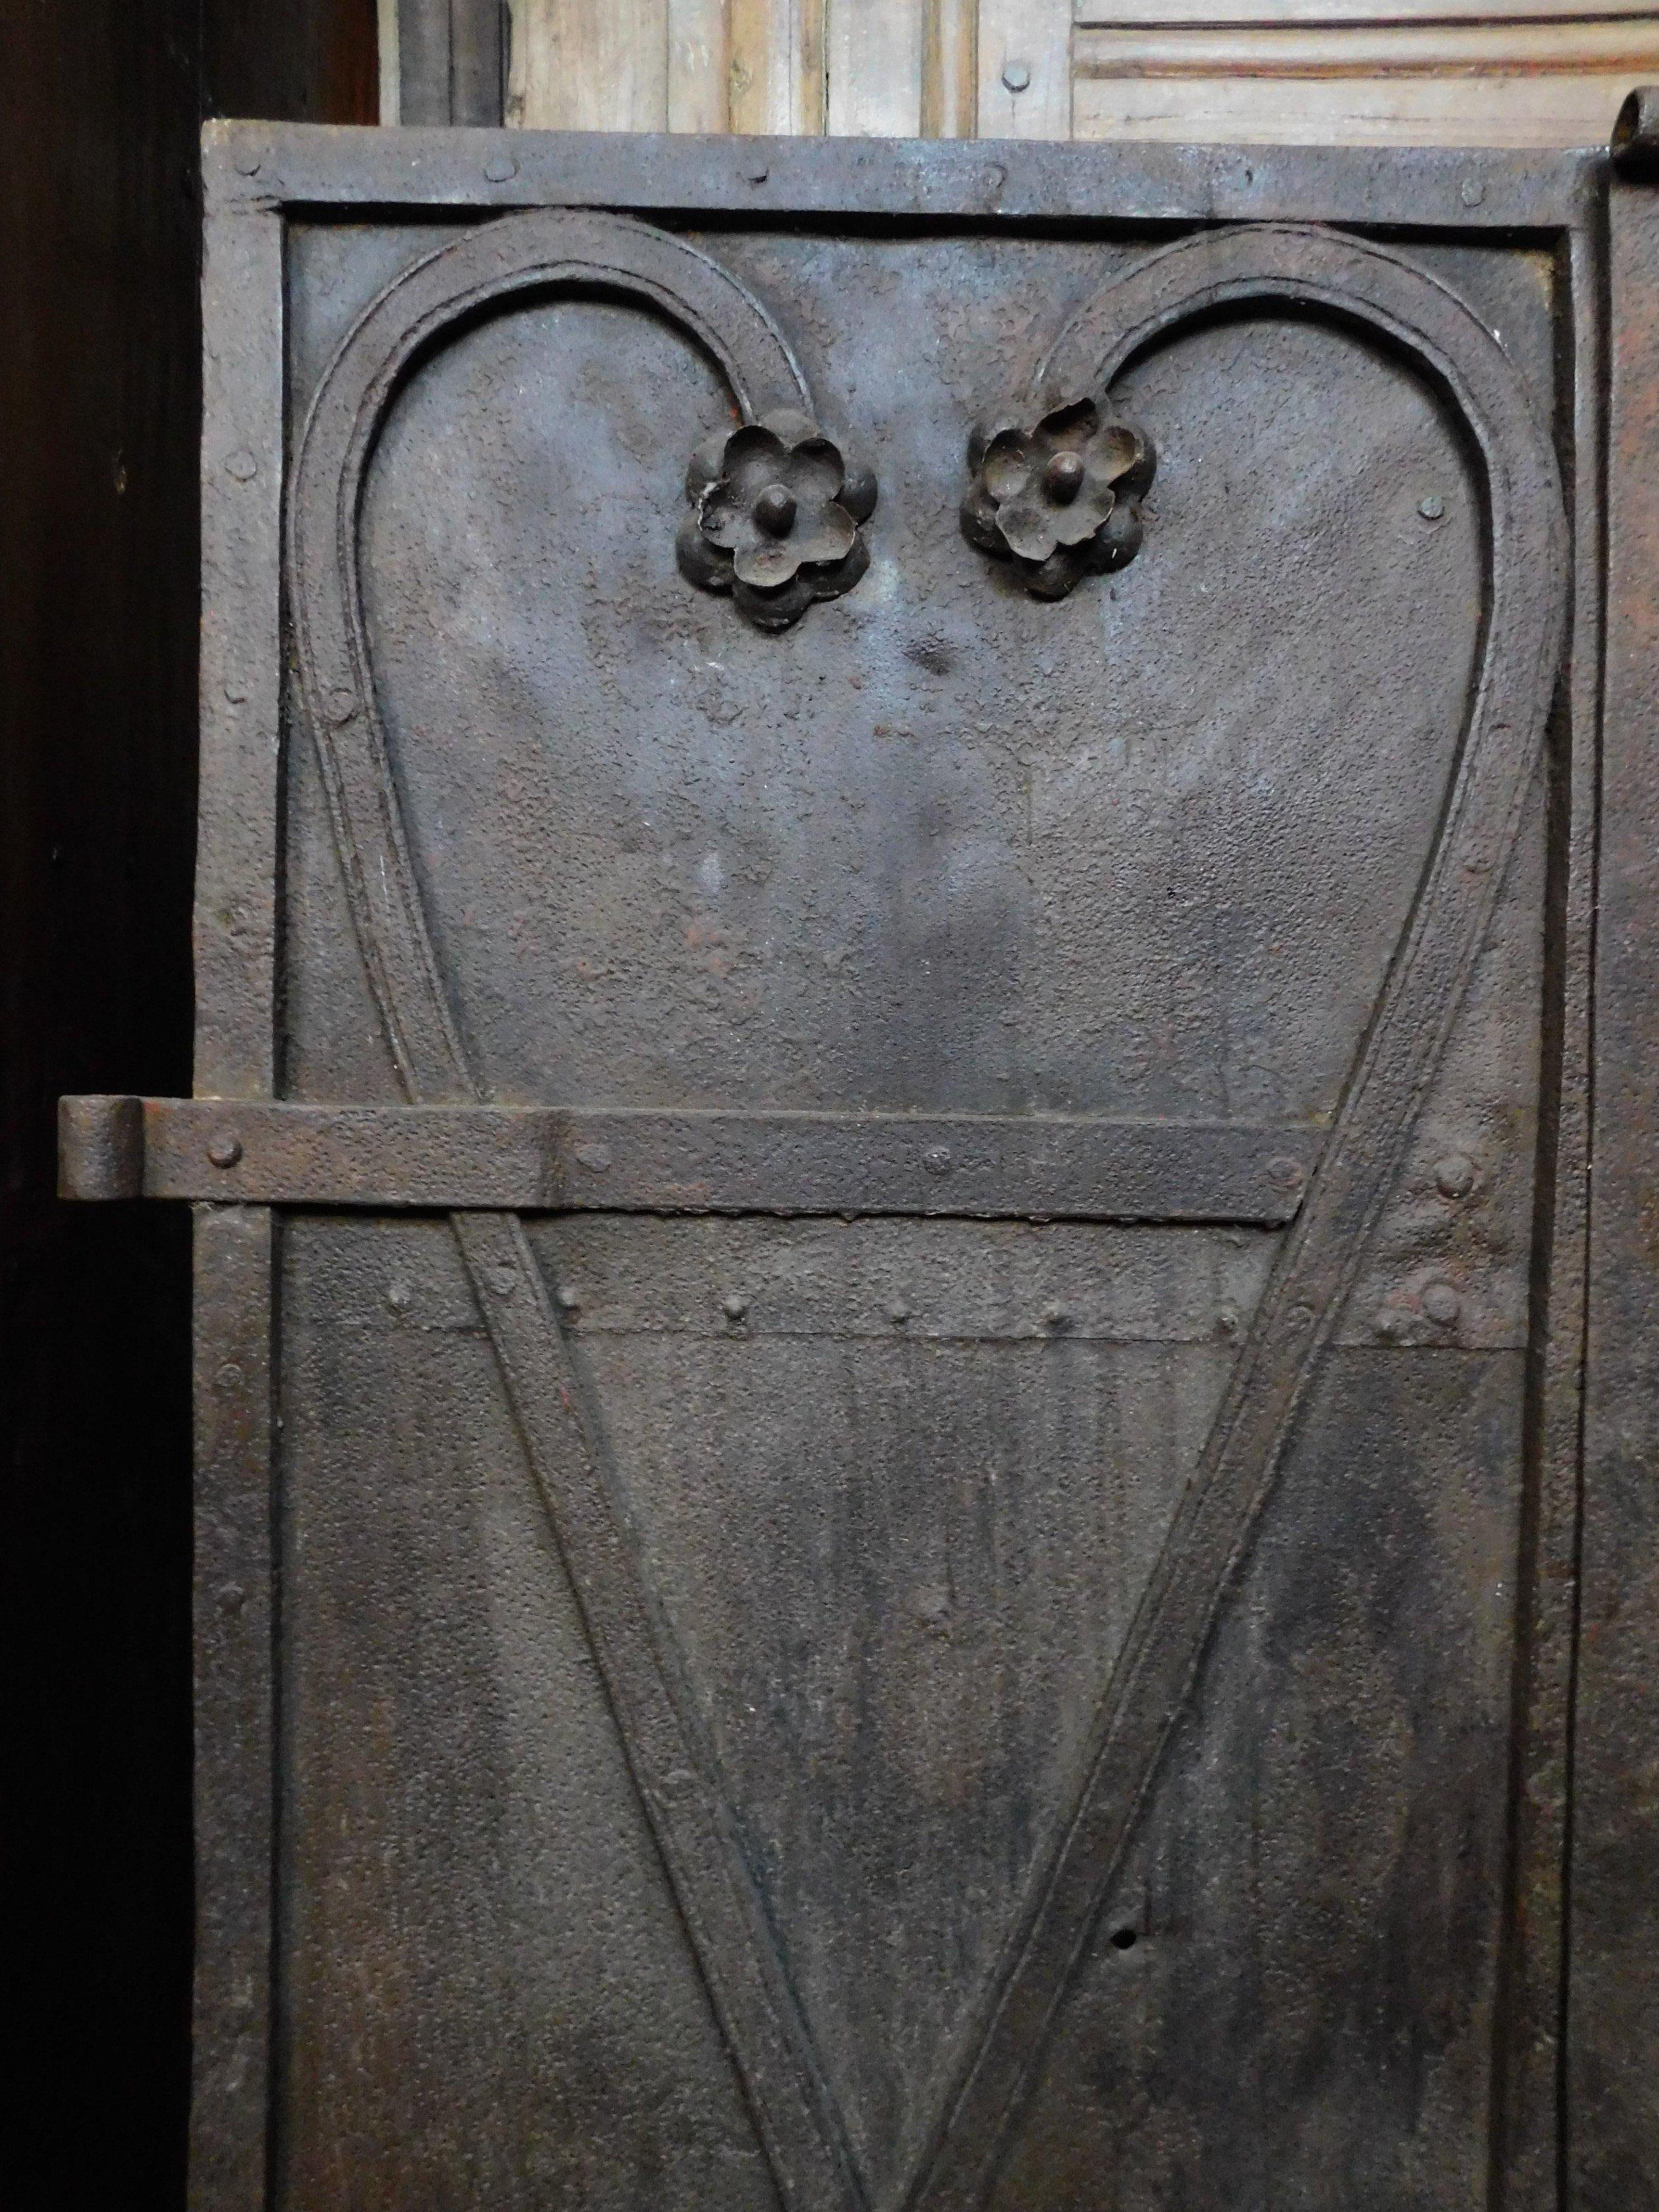 18th century door